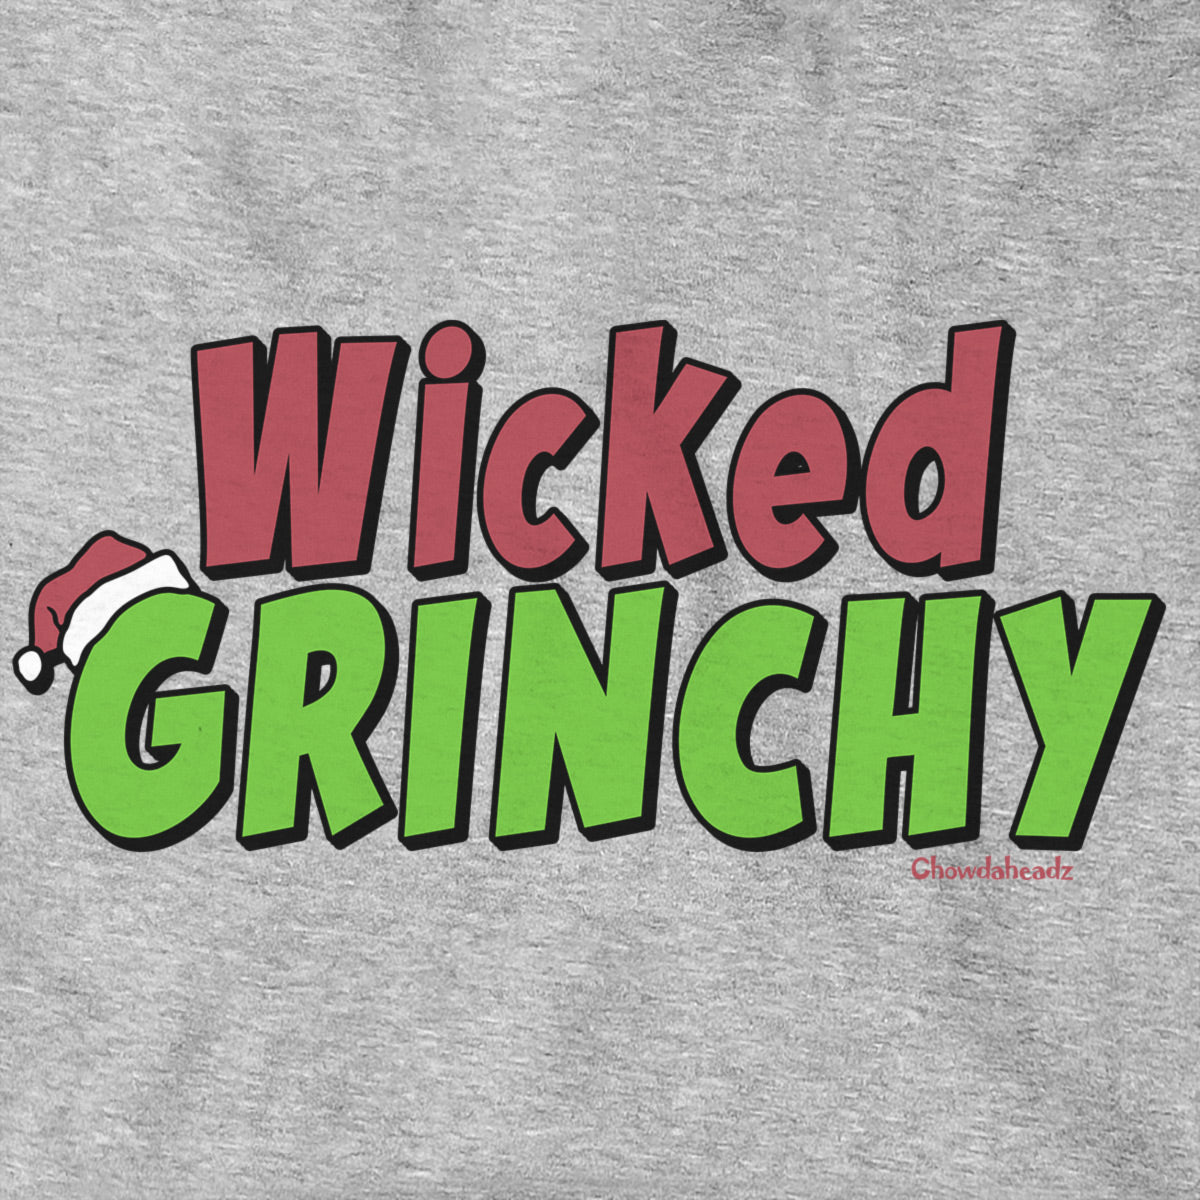 Wicked Grinchy Hoodie - Chowdaheadz